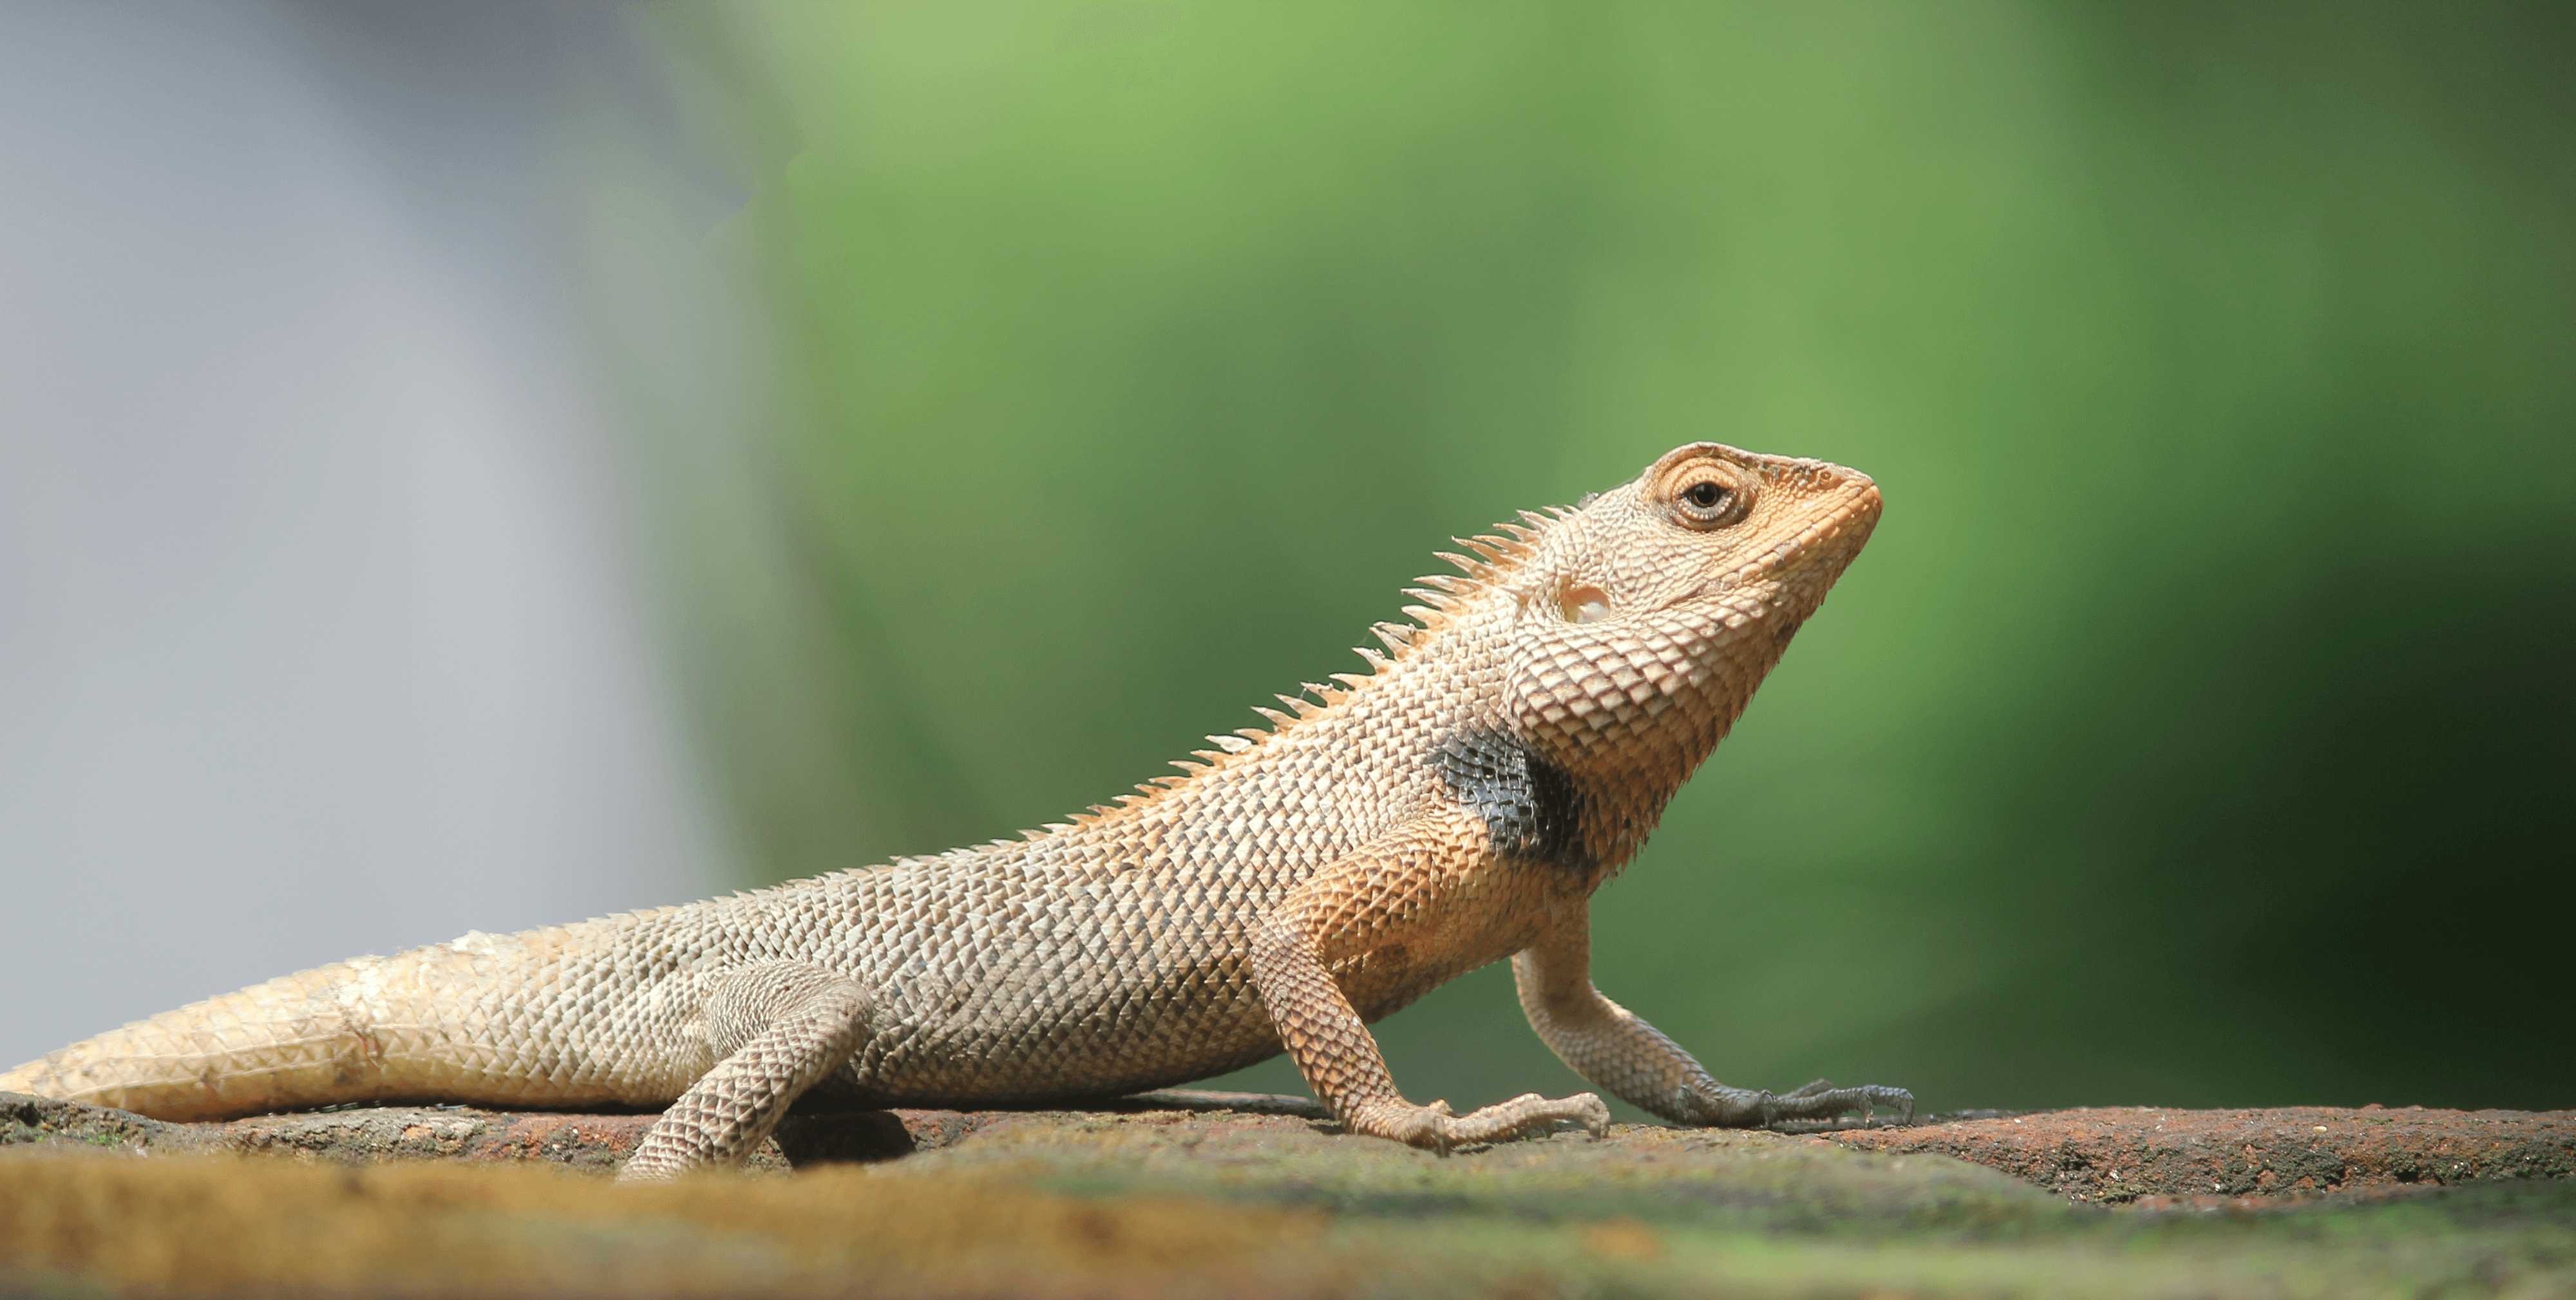 Indian Garden Lizard